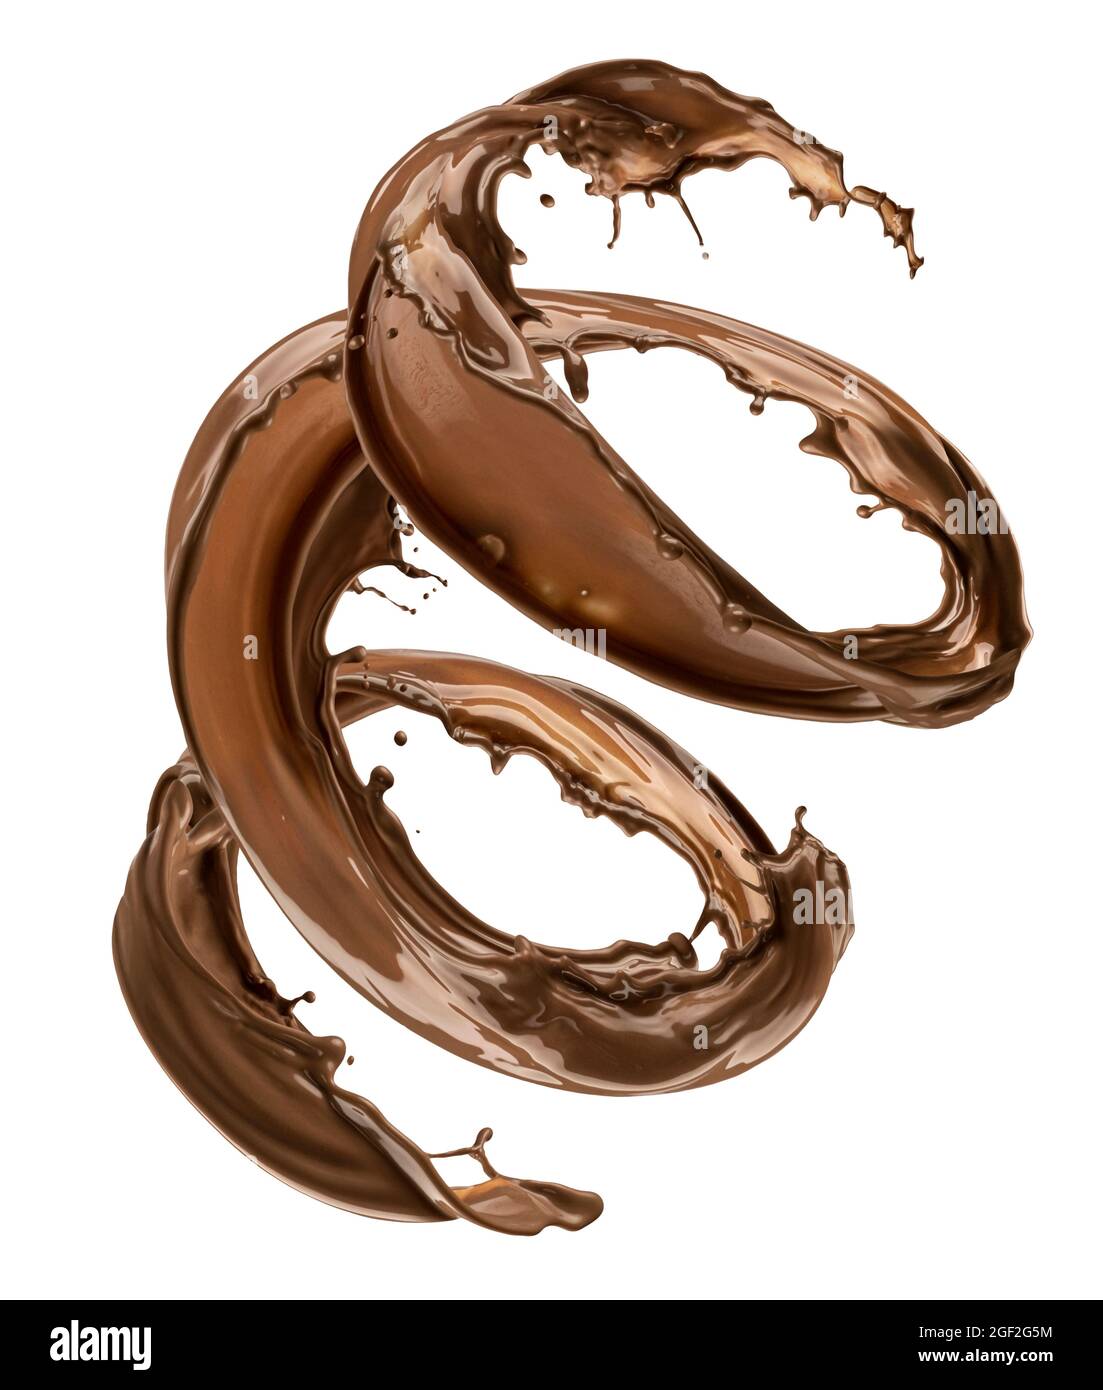 Splash chocolat isolé sur fond blanc Banque D'Images